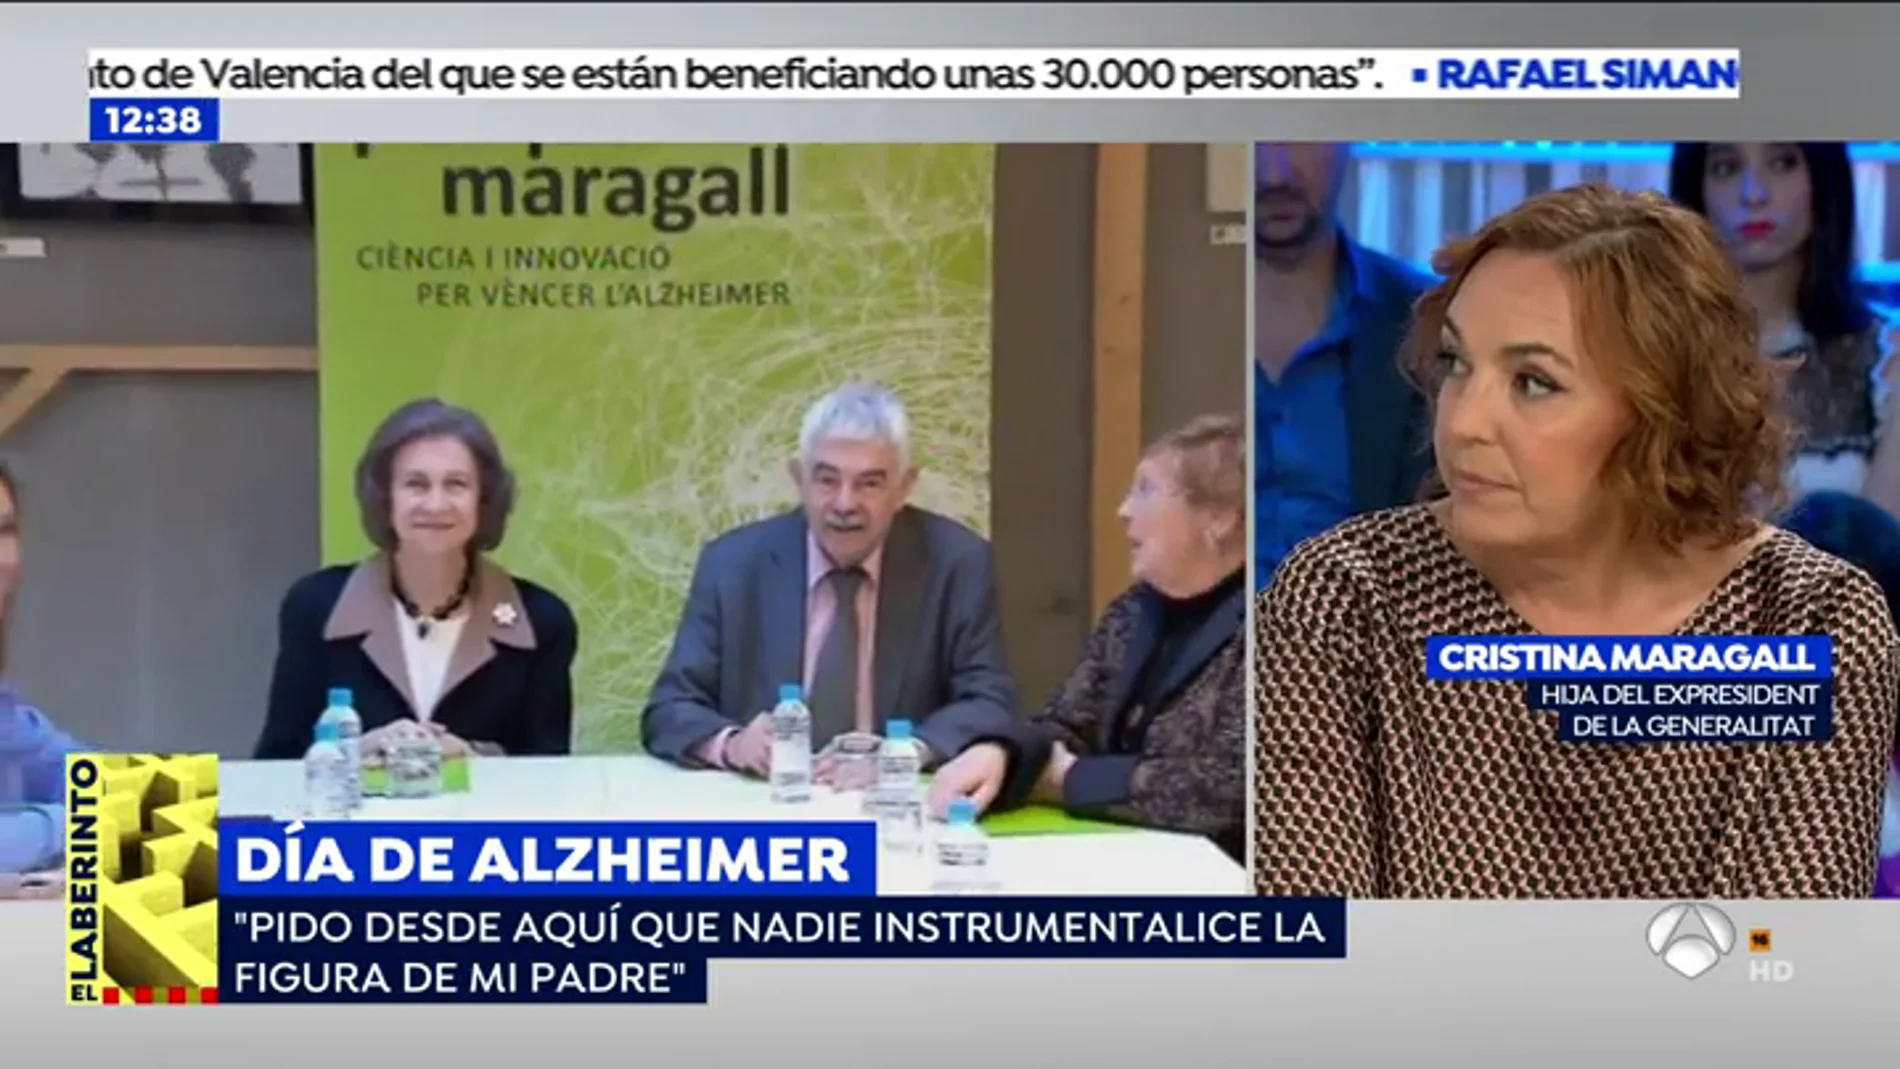 Cristina Maragall: "Mi padre está atento a la televisión pero ya no lee ni opina"